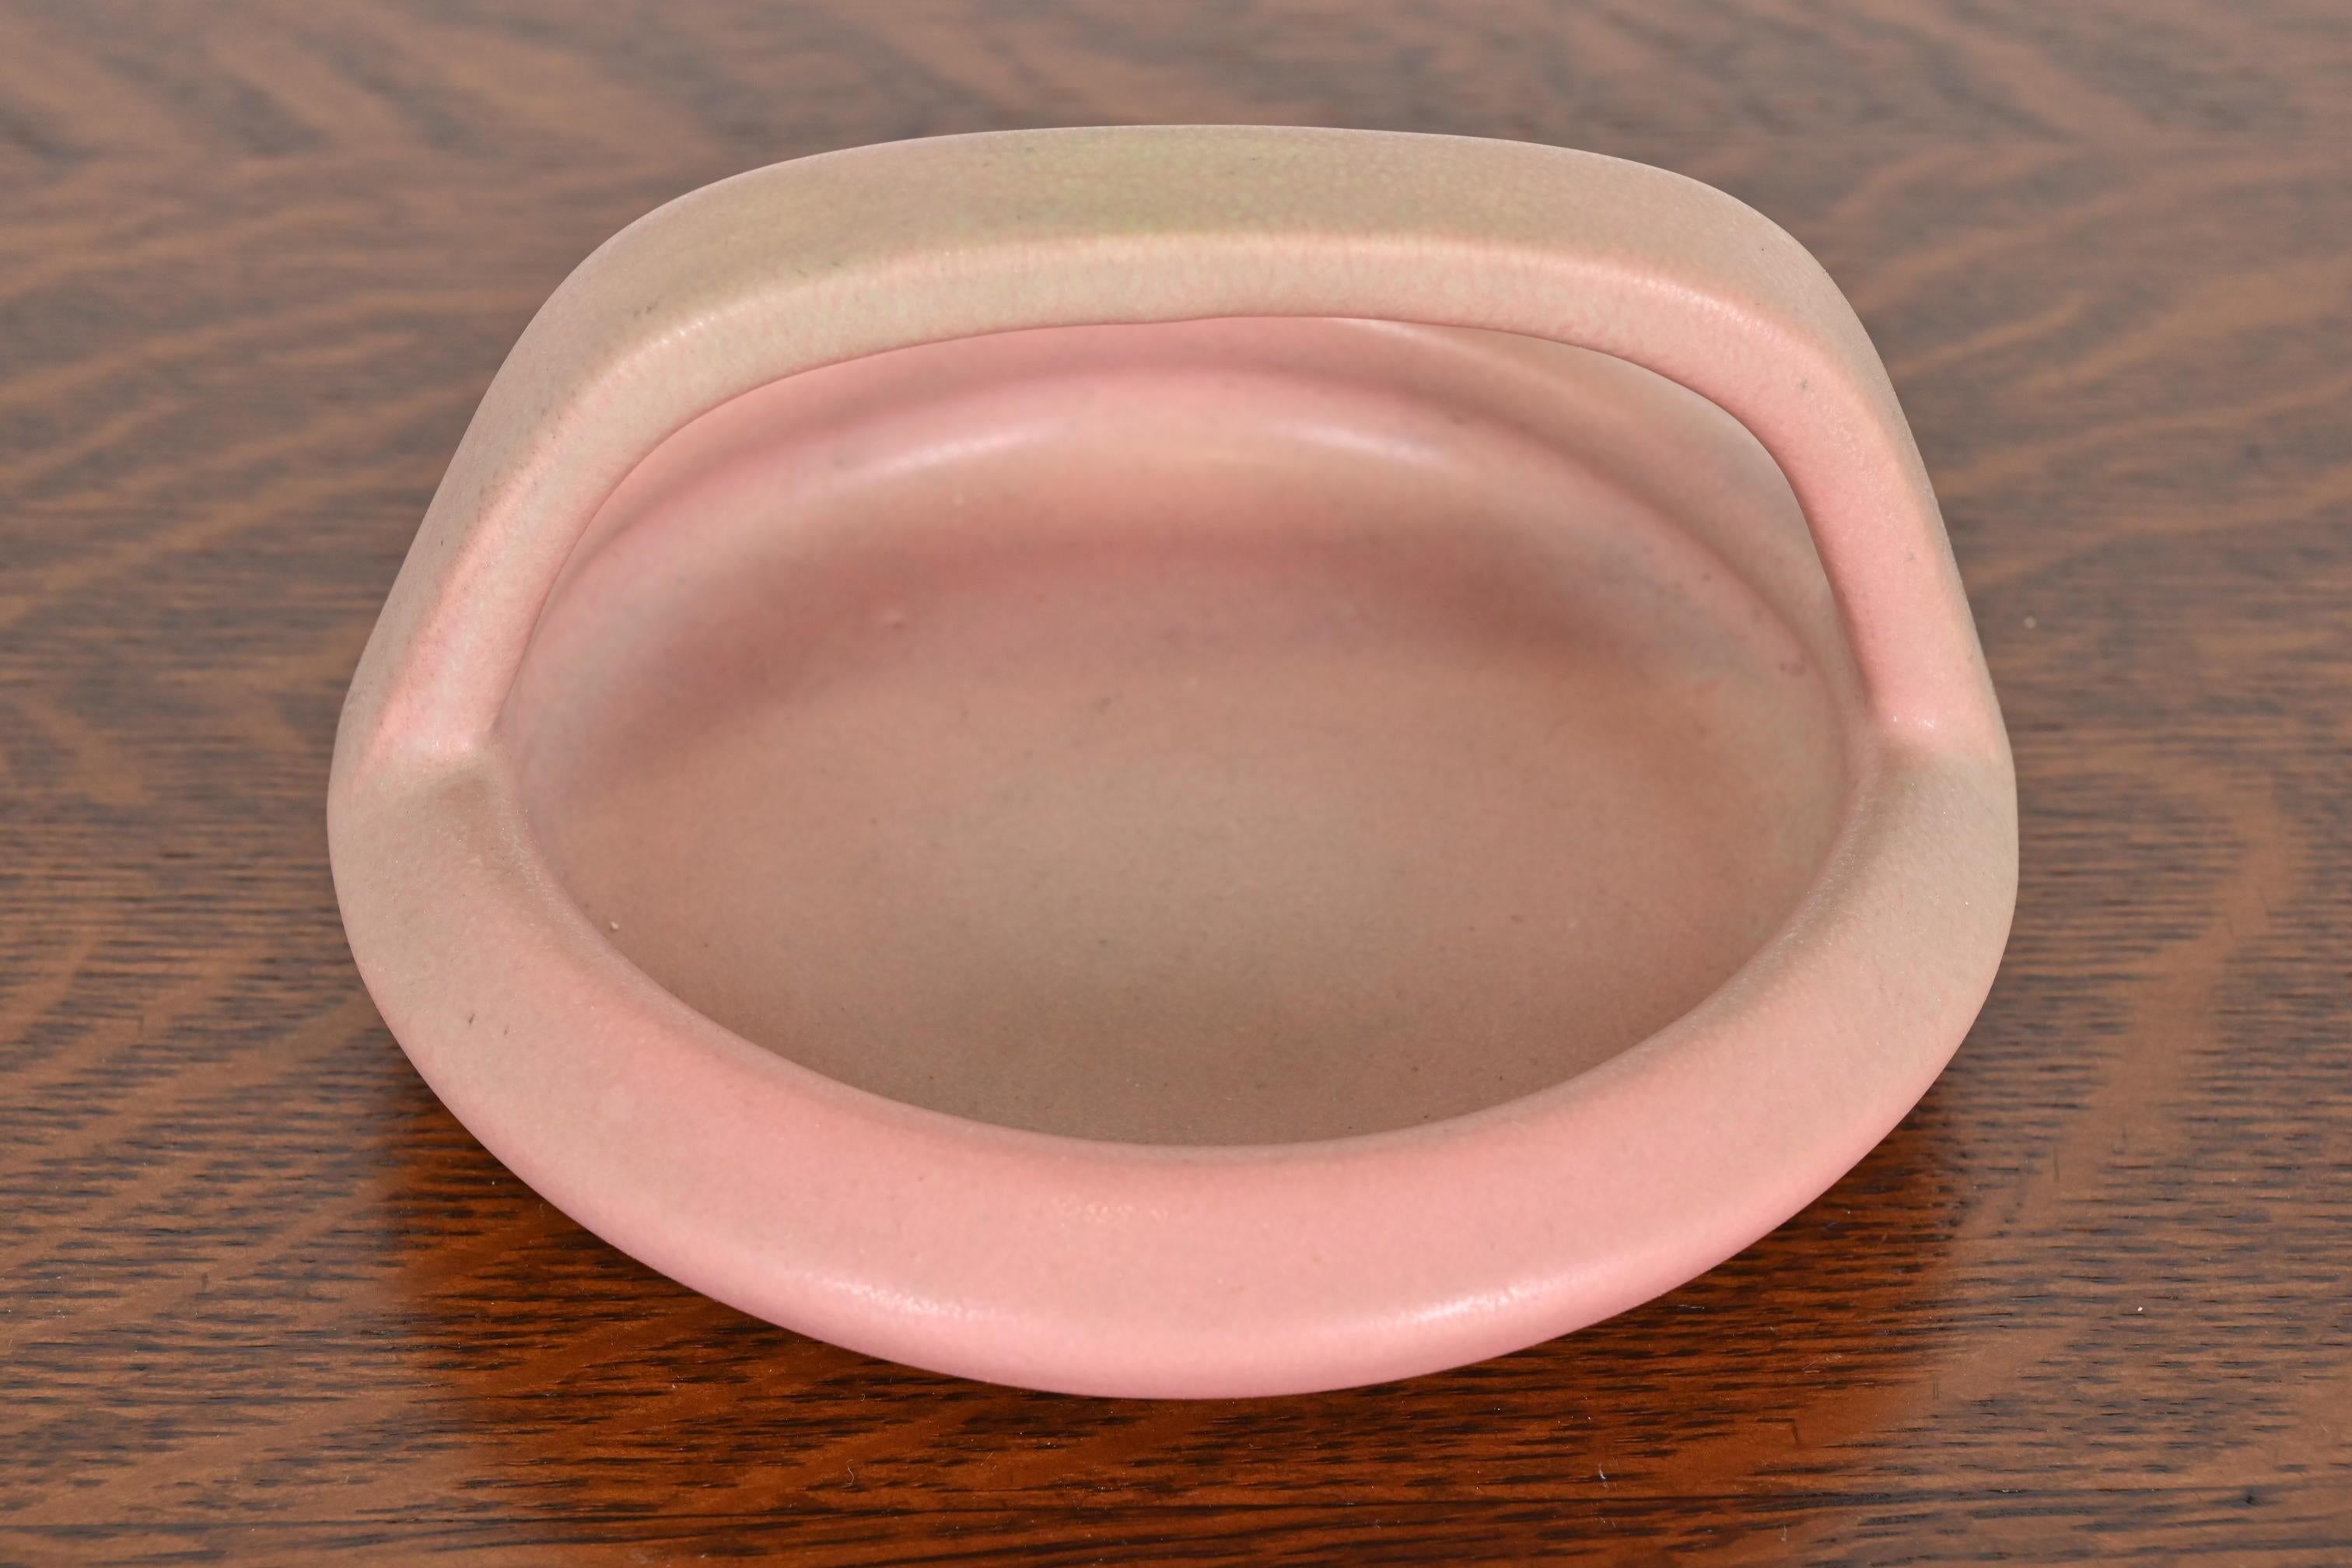 Magnifique bol, fourre-tout ou cendrier en céramique émaillée de la période Arts & Crafts.

Par Rookwood Pottery

ÉTATS-UNIS, 1919

Céramique émaillée, d'une belle couleur rose.

Mesures : 5,63 